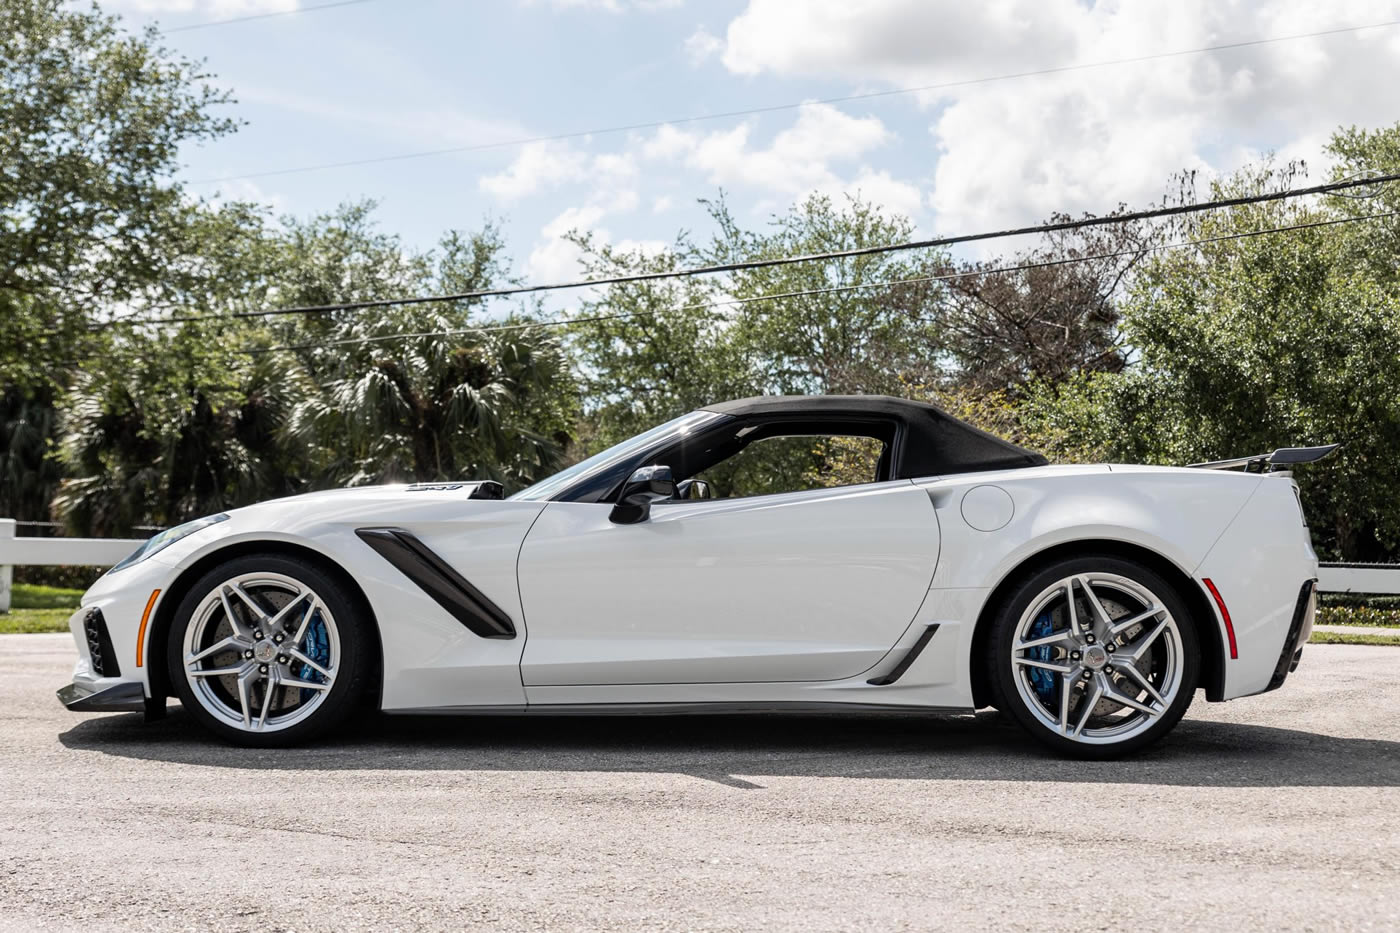 2019 Corvette ZR1 Convertible in Arctic White